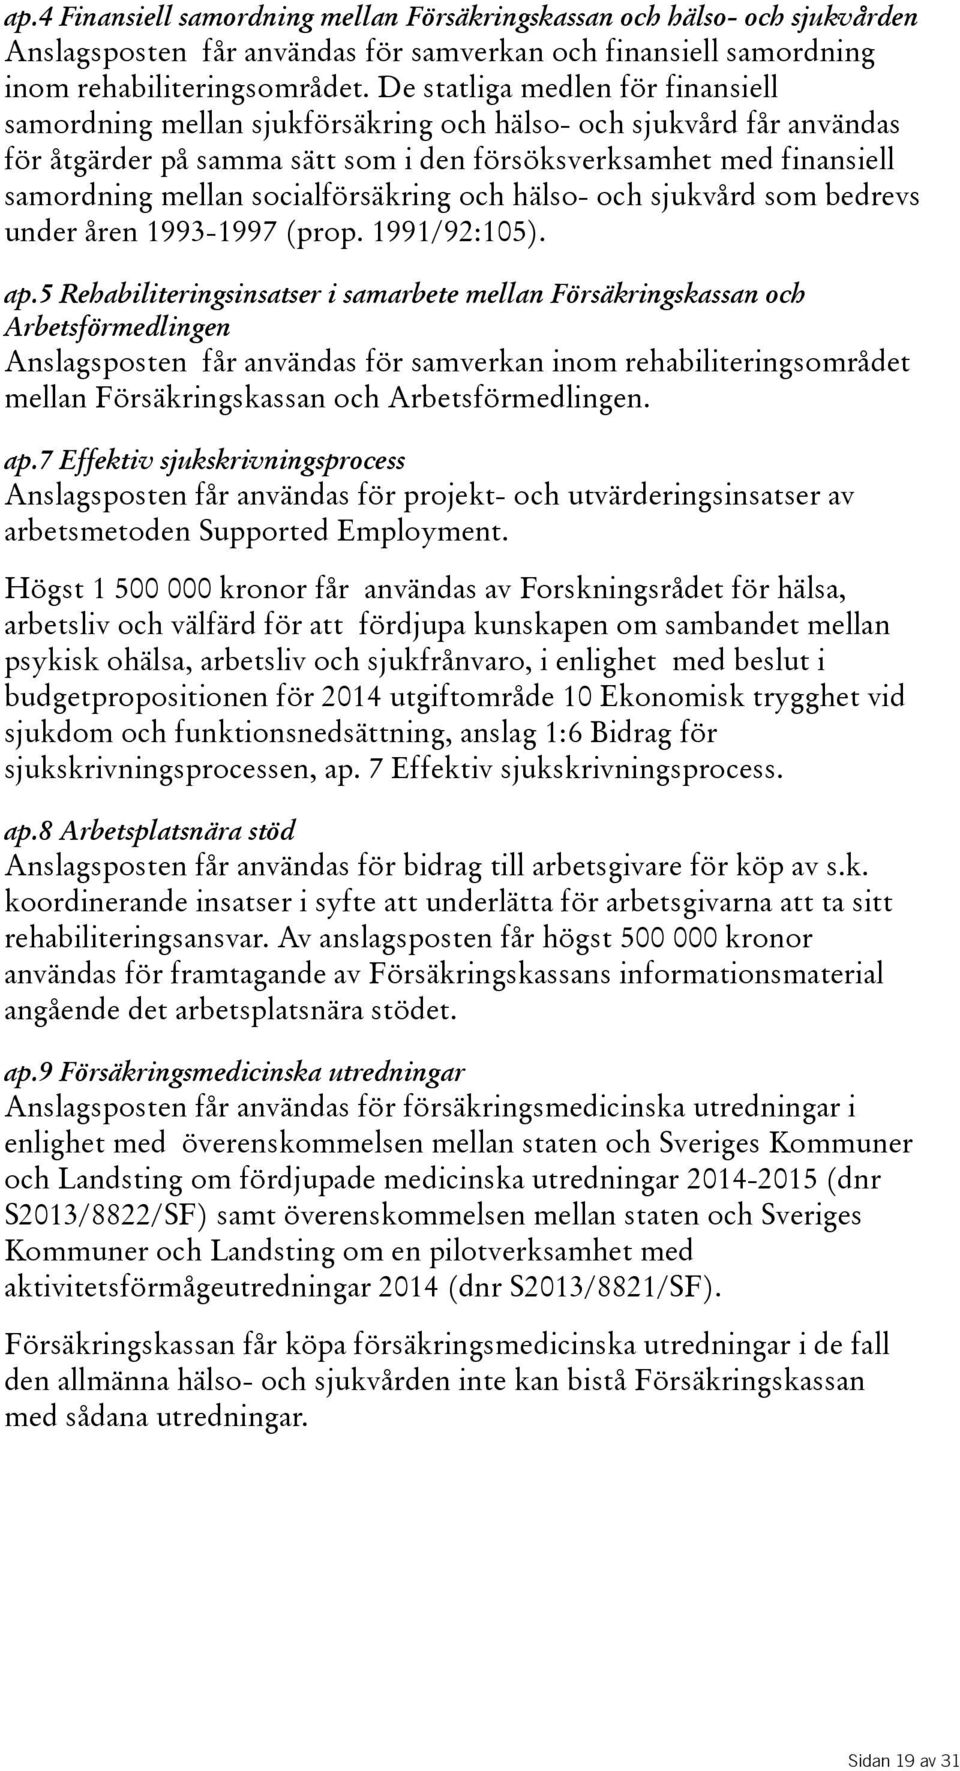 socialförsäkring och hälso- och sjukvård som bedrevs underåren1993-1997(prop.1991/92:105). ap.